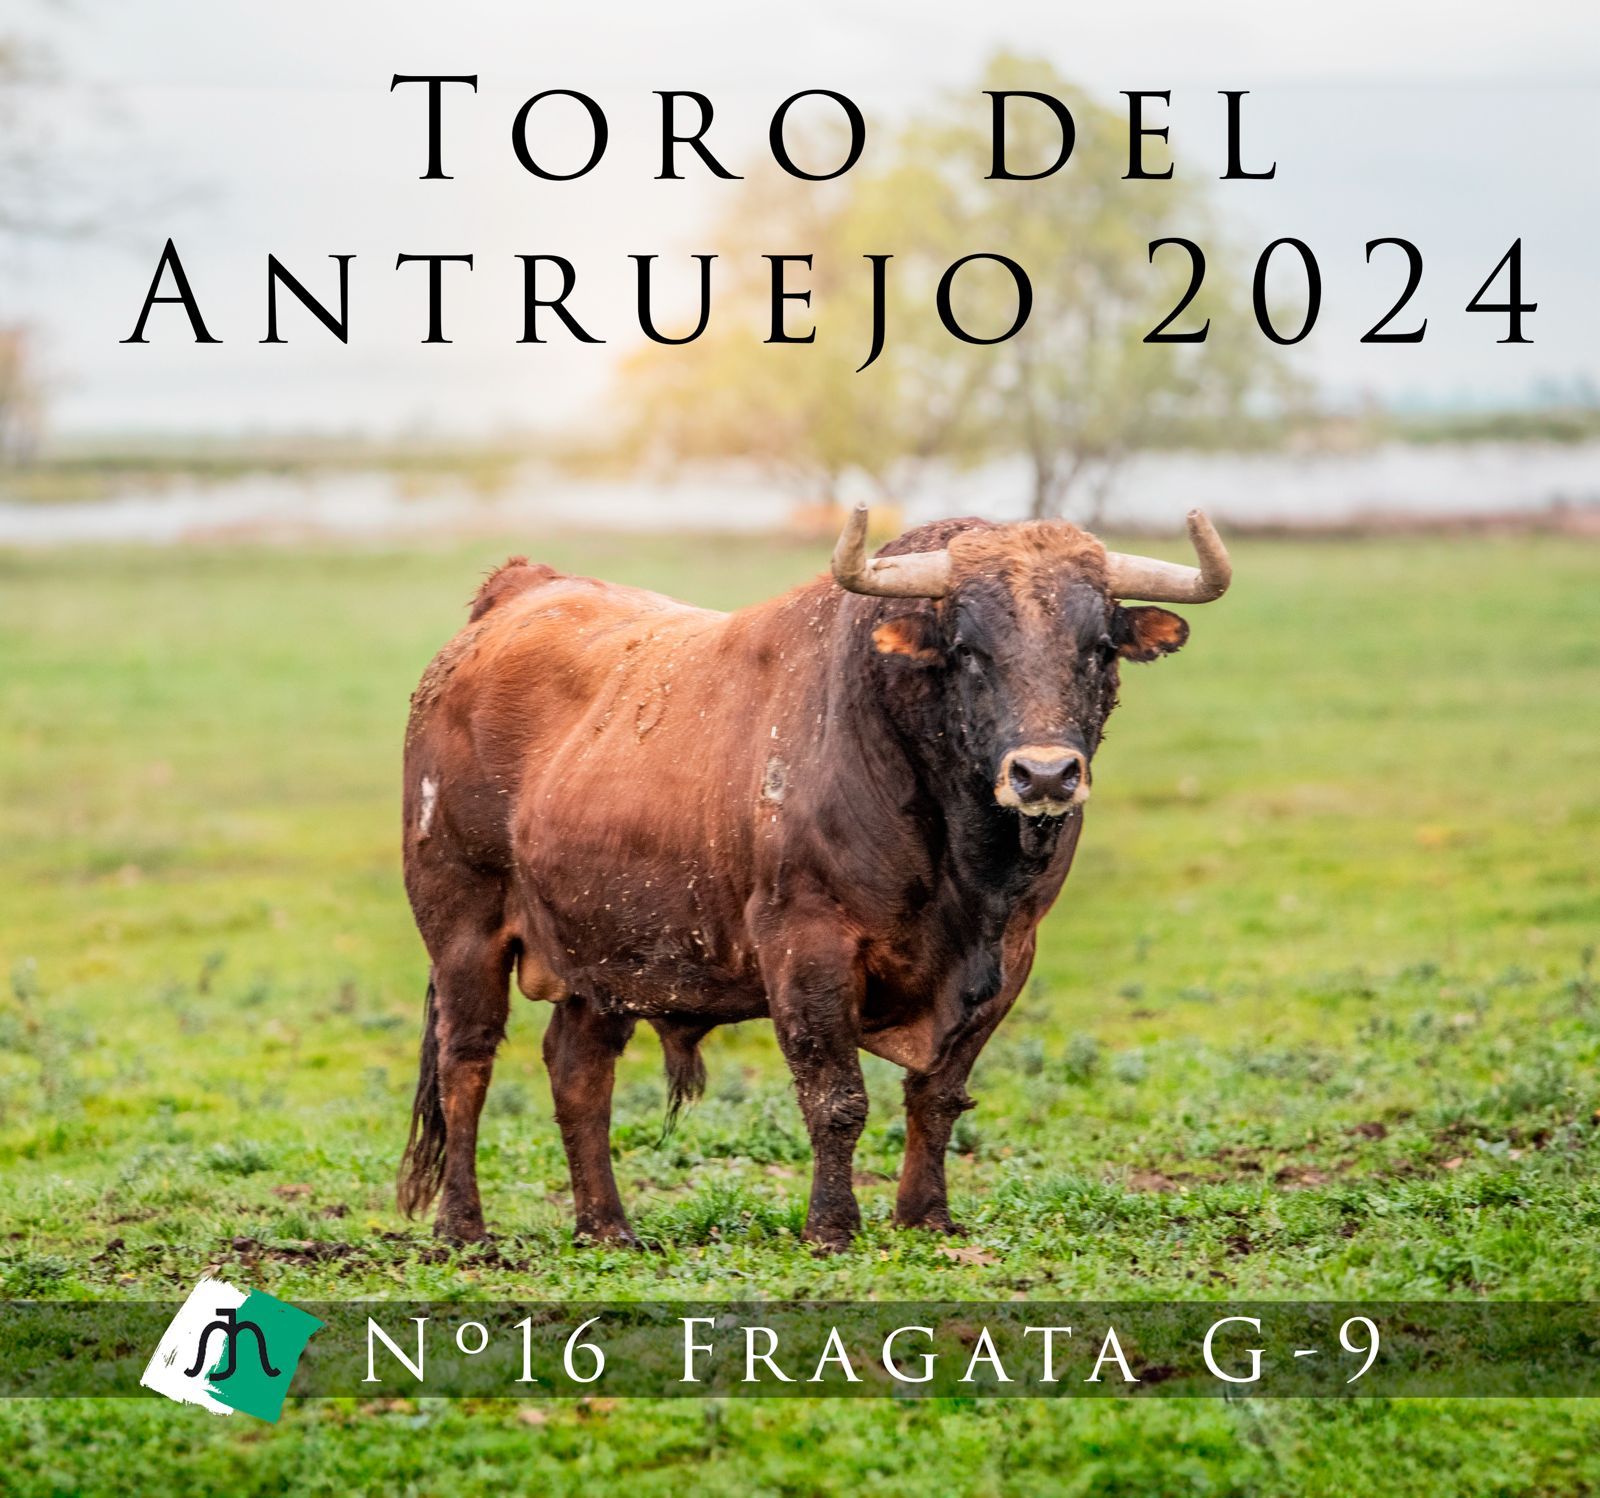 Fragata Toro Antruejo 2024 (1)